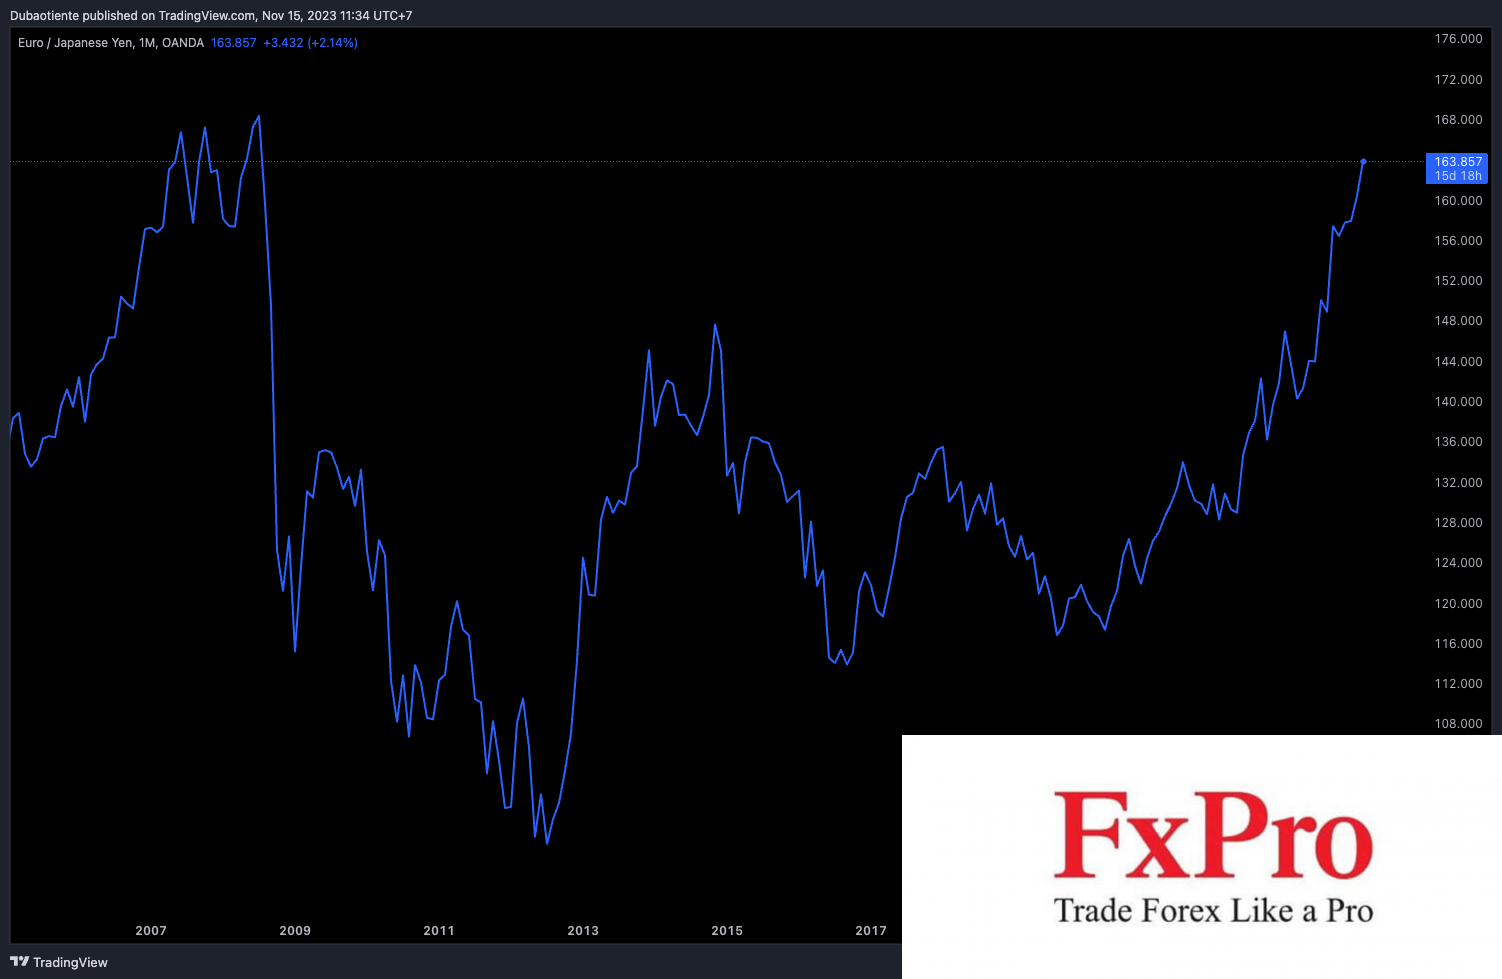 JPY tiếp tục trượt giá trên toàn cầu bất chấp USD suy yếu